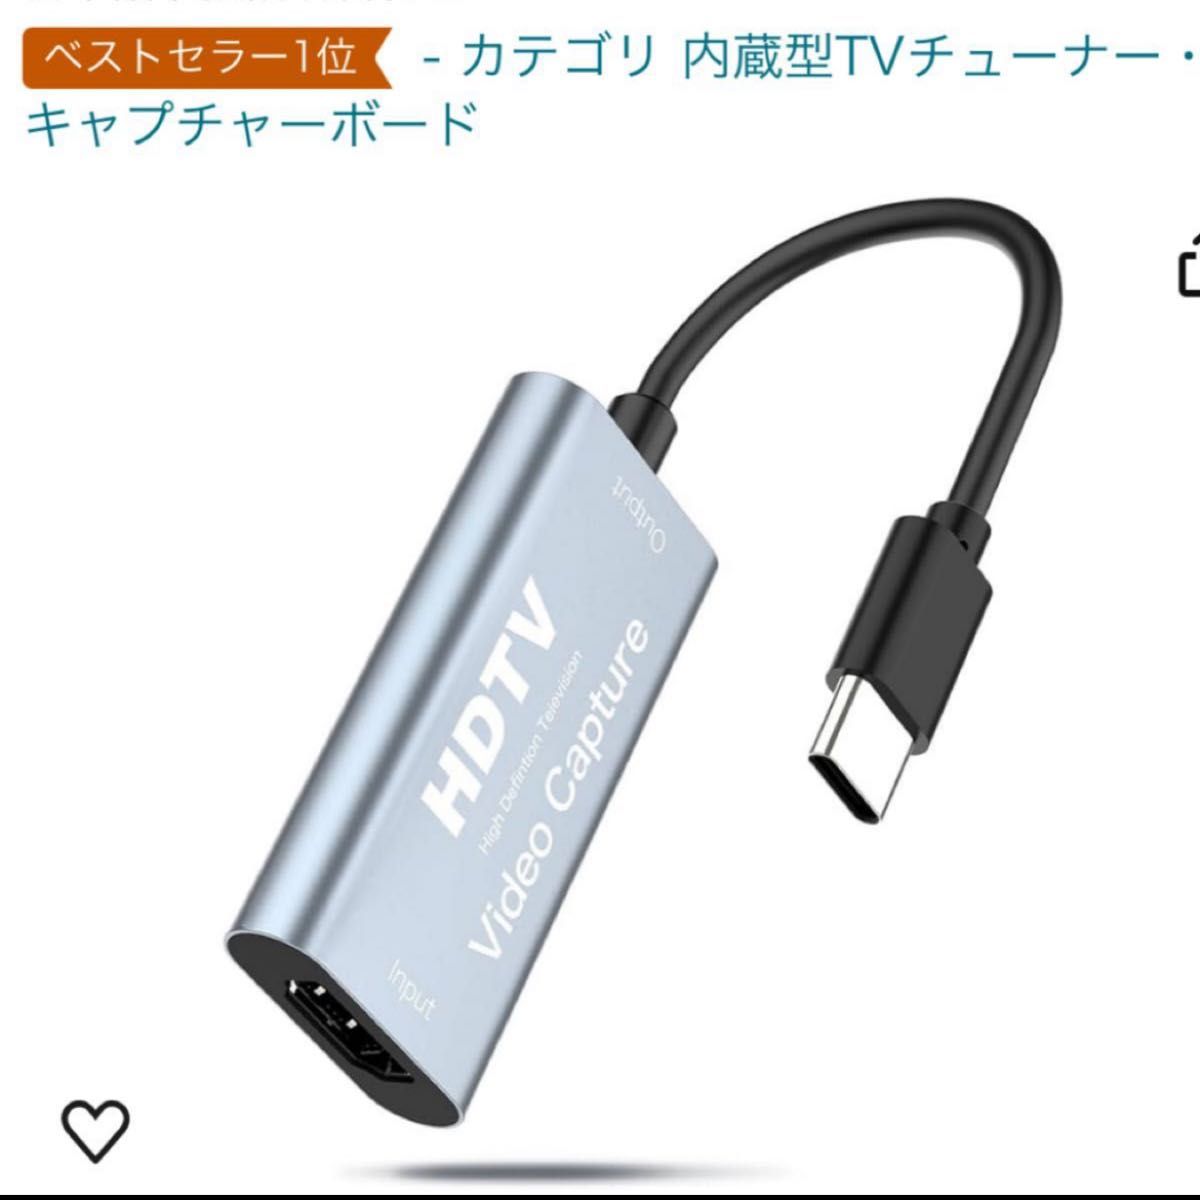 USB-C & HDMI 変換アダプタ キャプチャーボード Type-c HDMI 変換アダプタ HDMI キャプチャーボード 